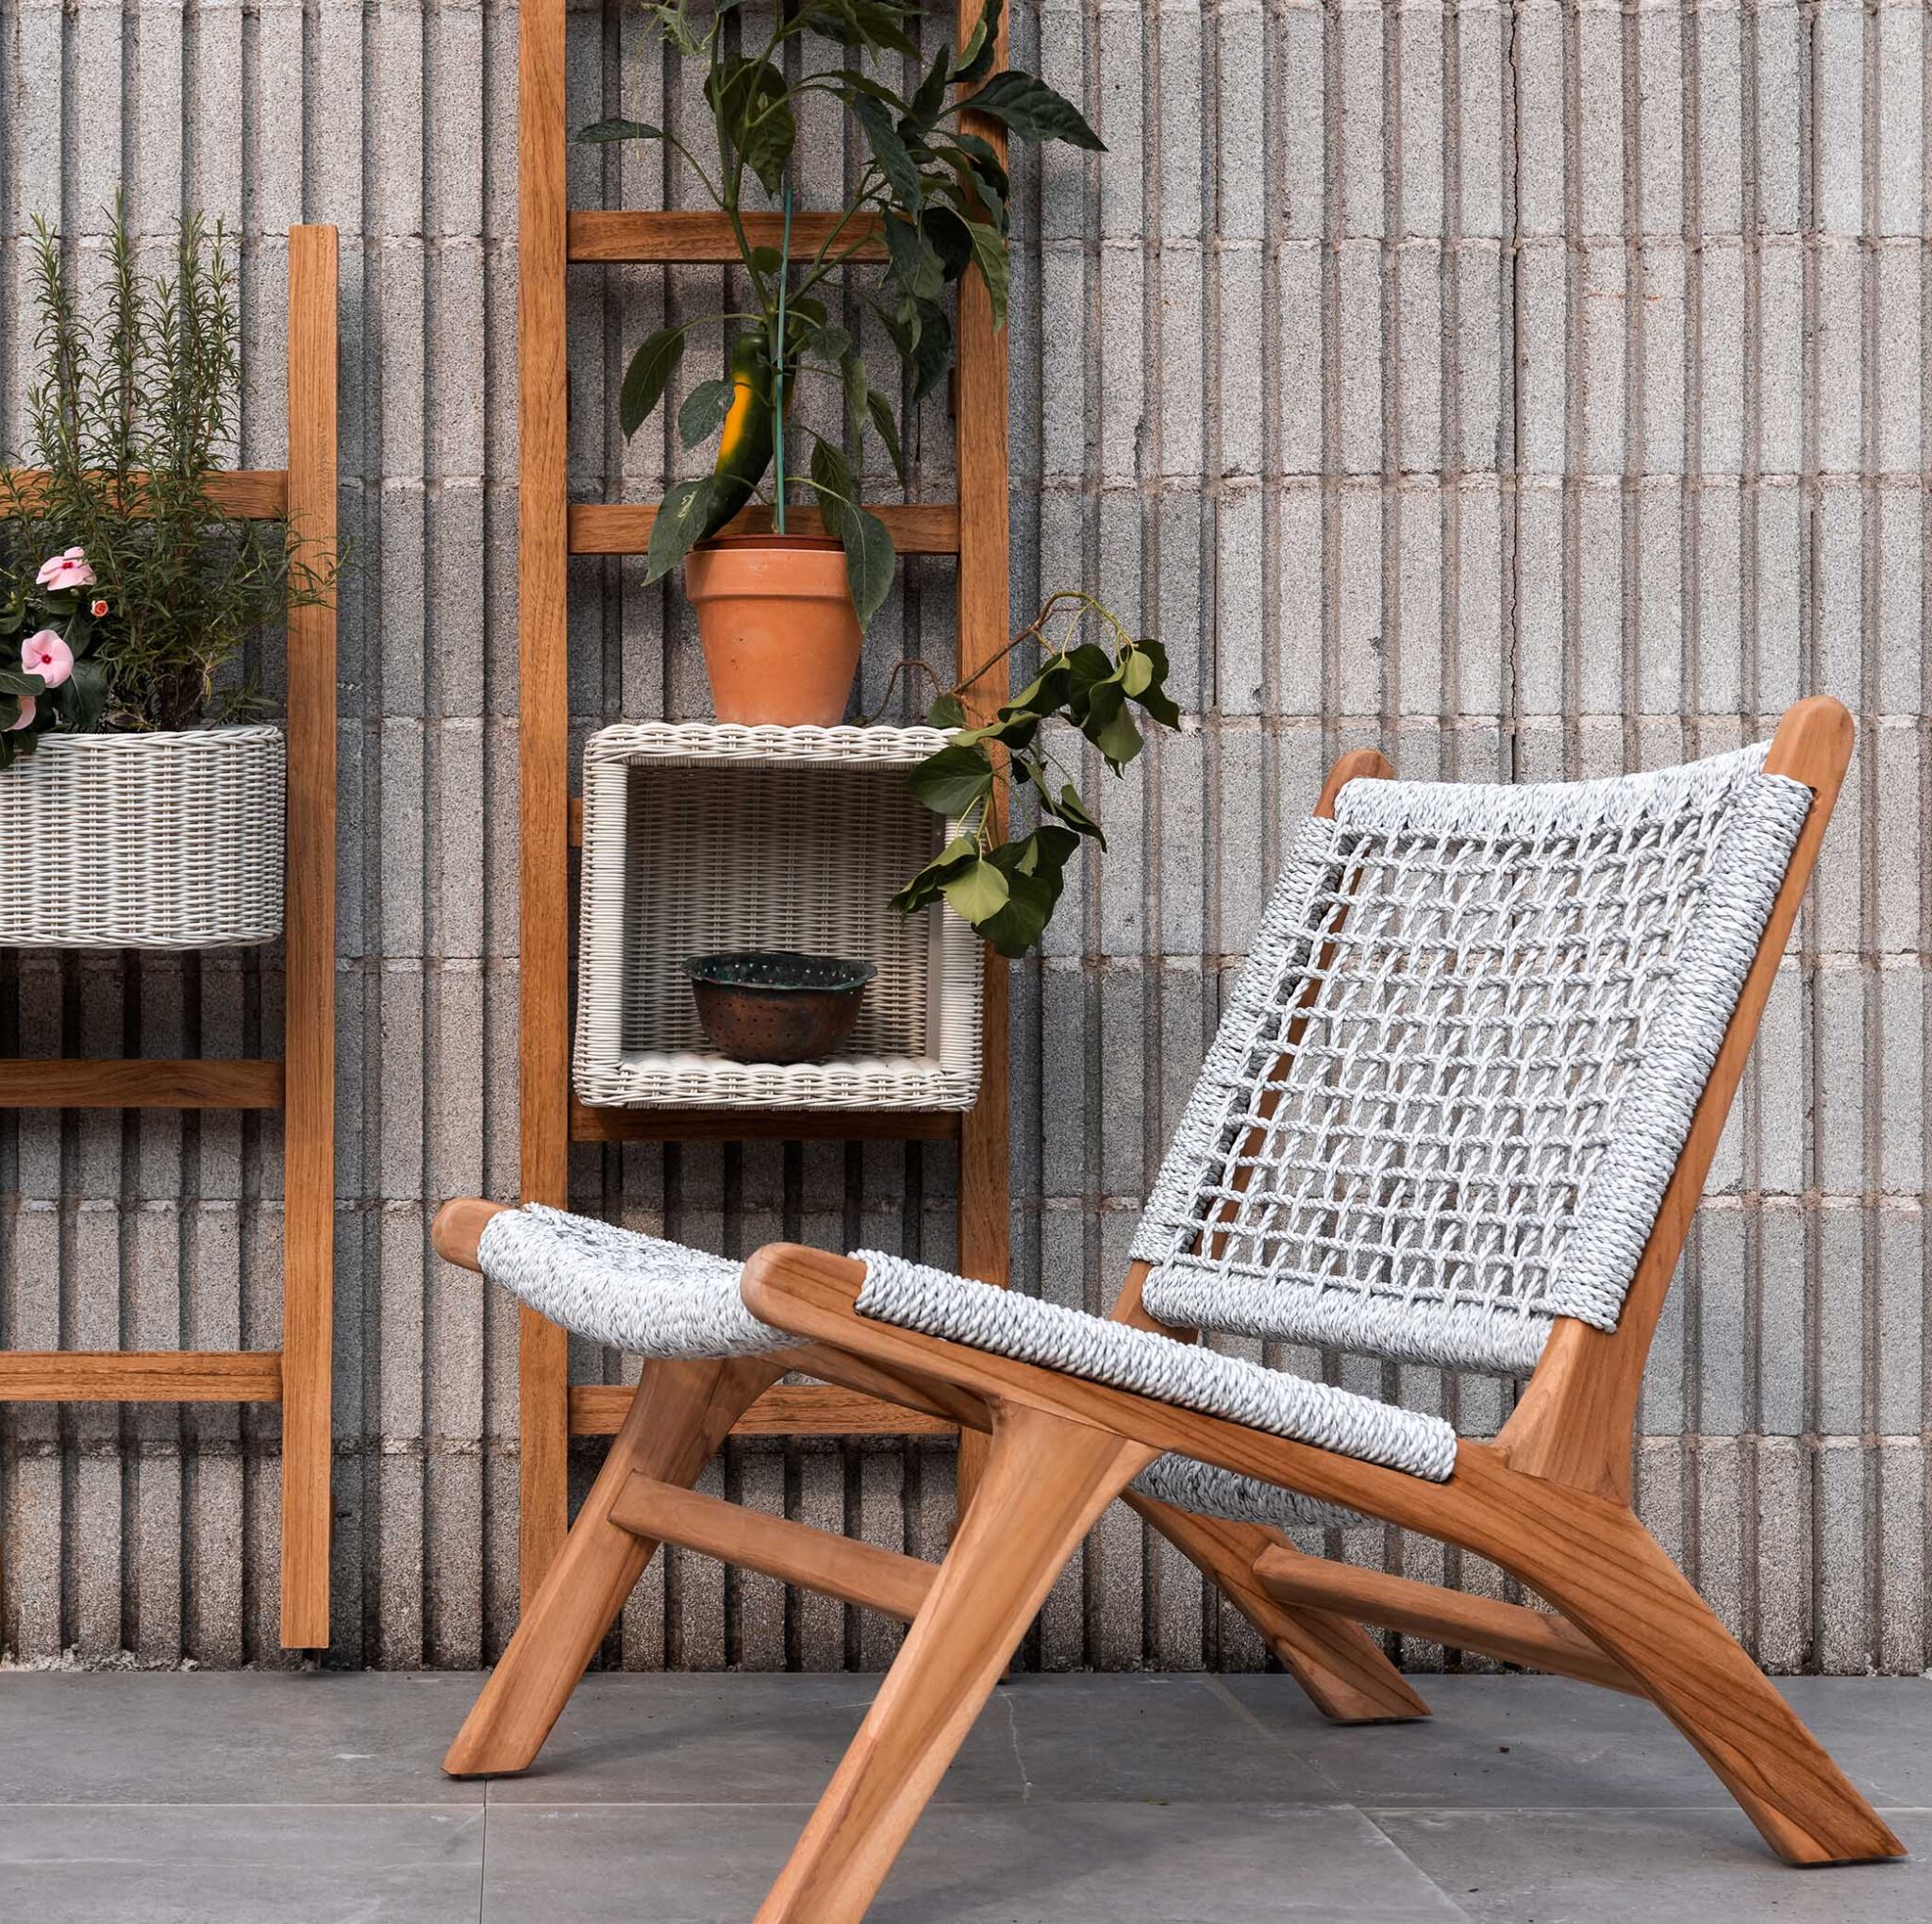 sancilio evotech molfetta - forniture outdoor arredogiardino sedie sedute poltrone divani complementi lounge sostenibilità ROSA SPLENDIANI ambientazione